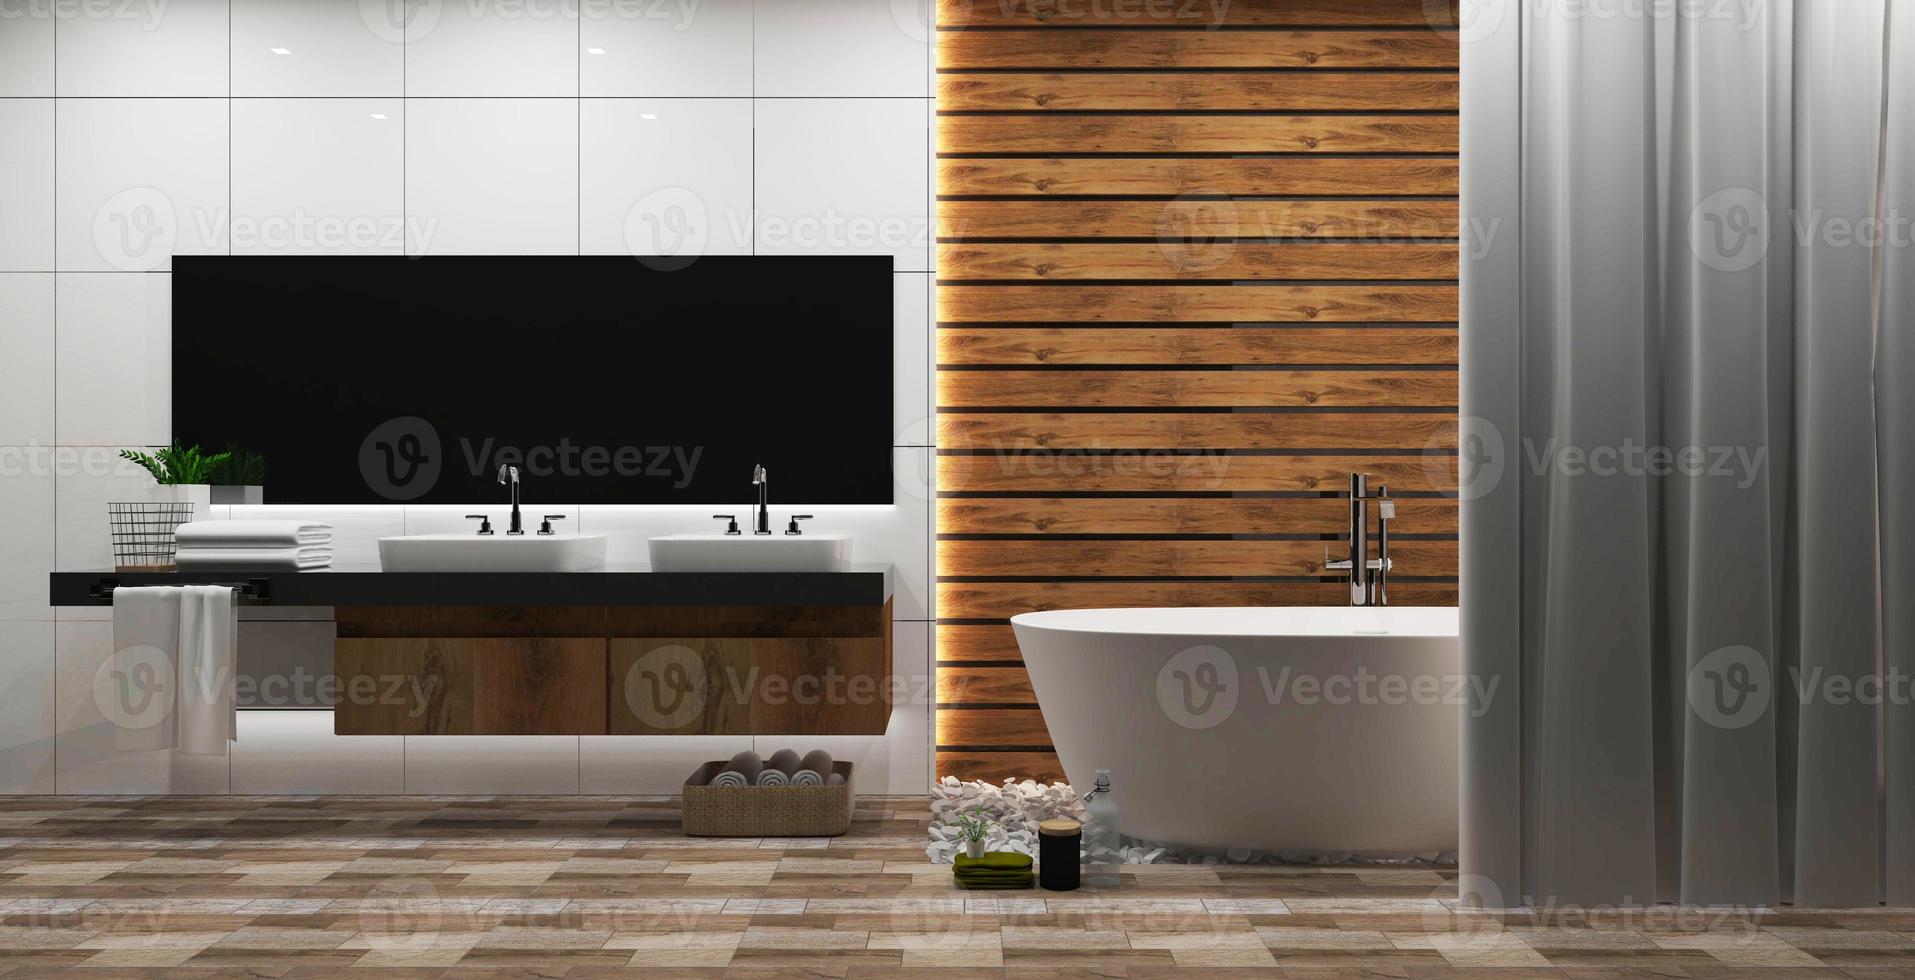 witte tegel en houten muur badkamer interieur met een ronde witte kuip, zen-stijl. 3D-rendering foto